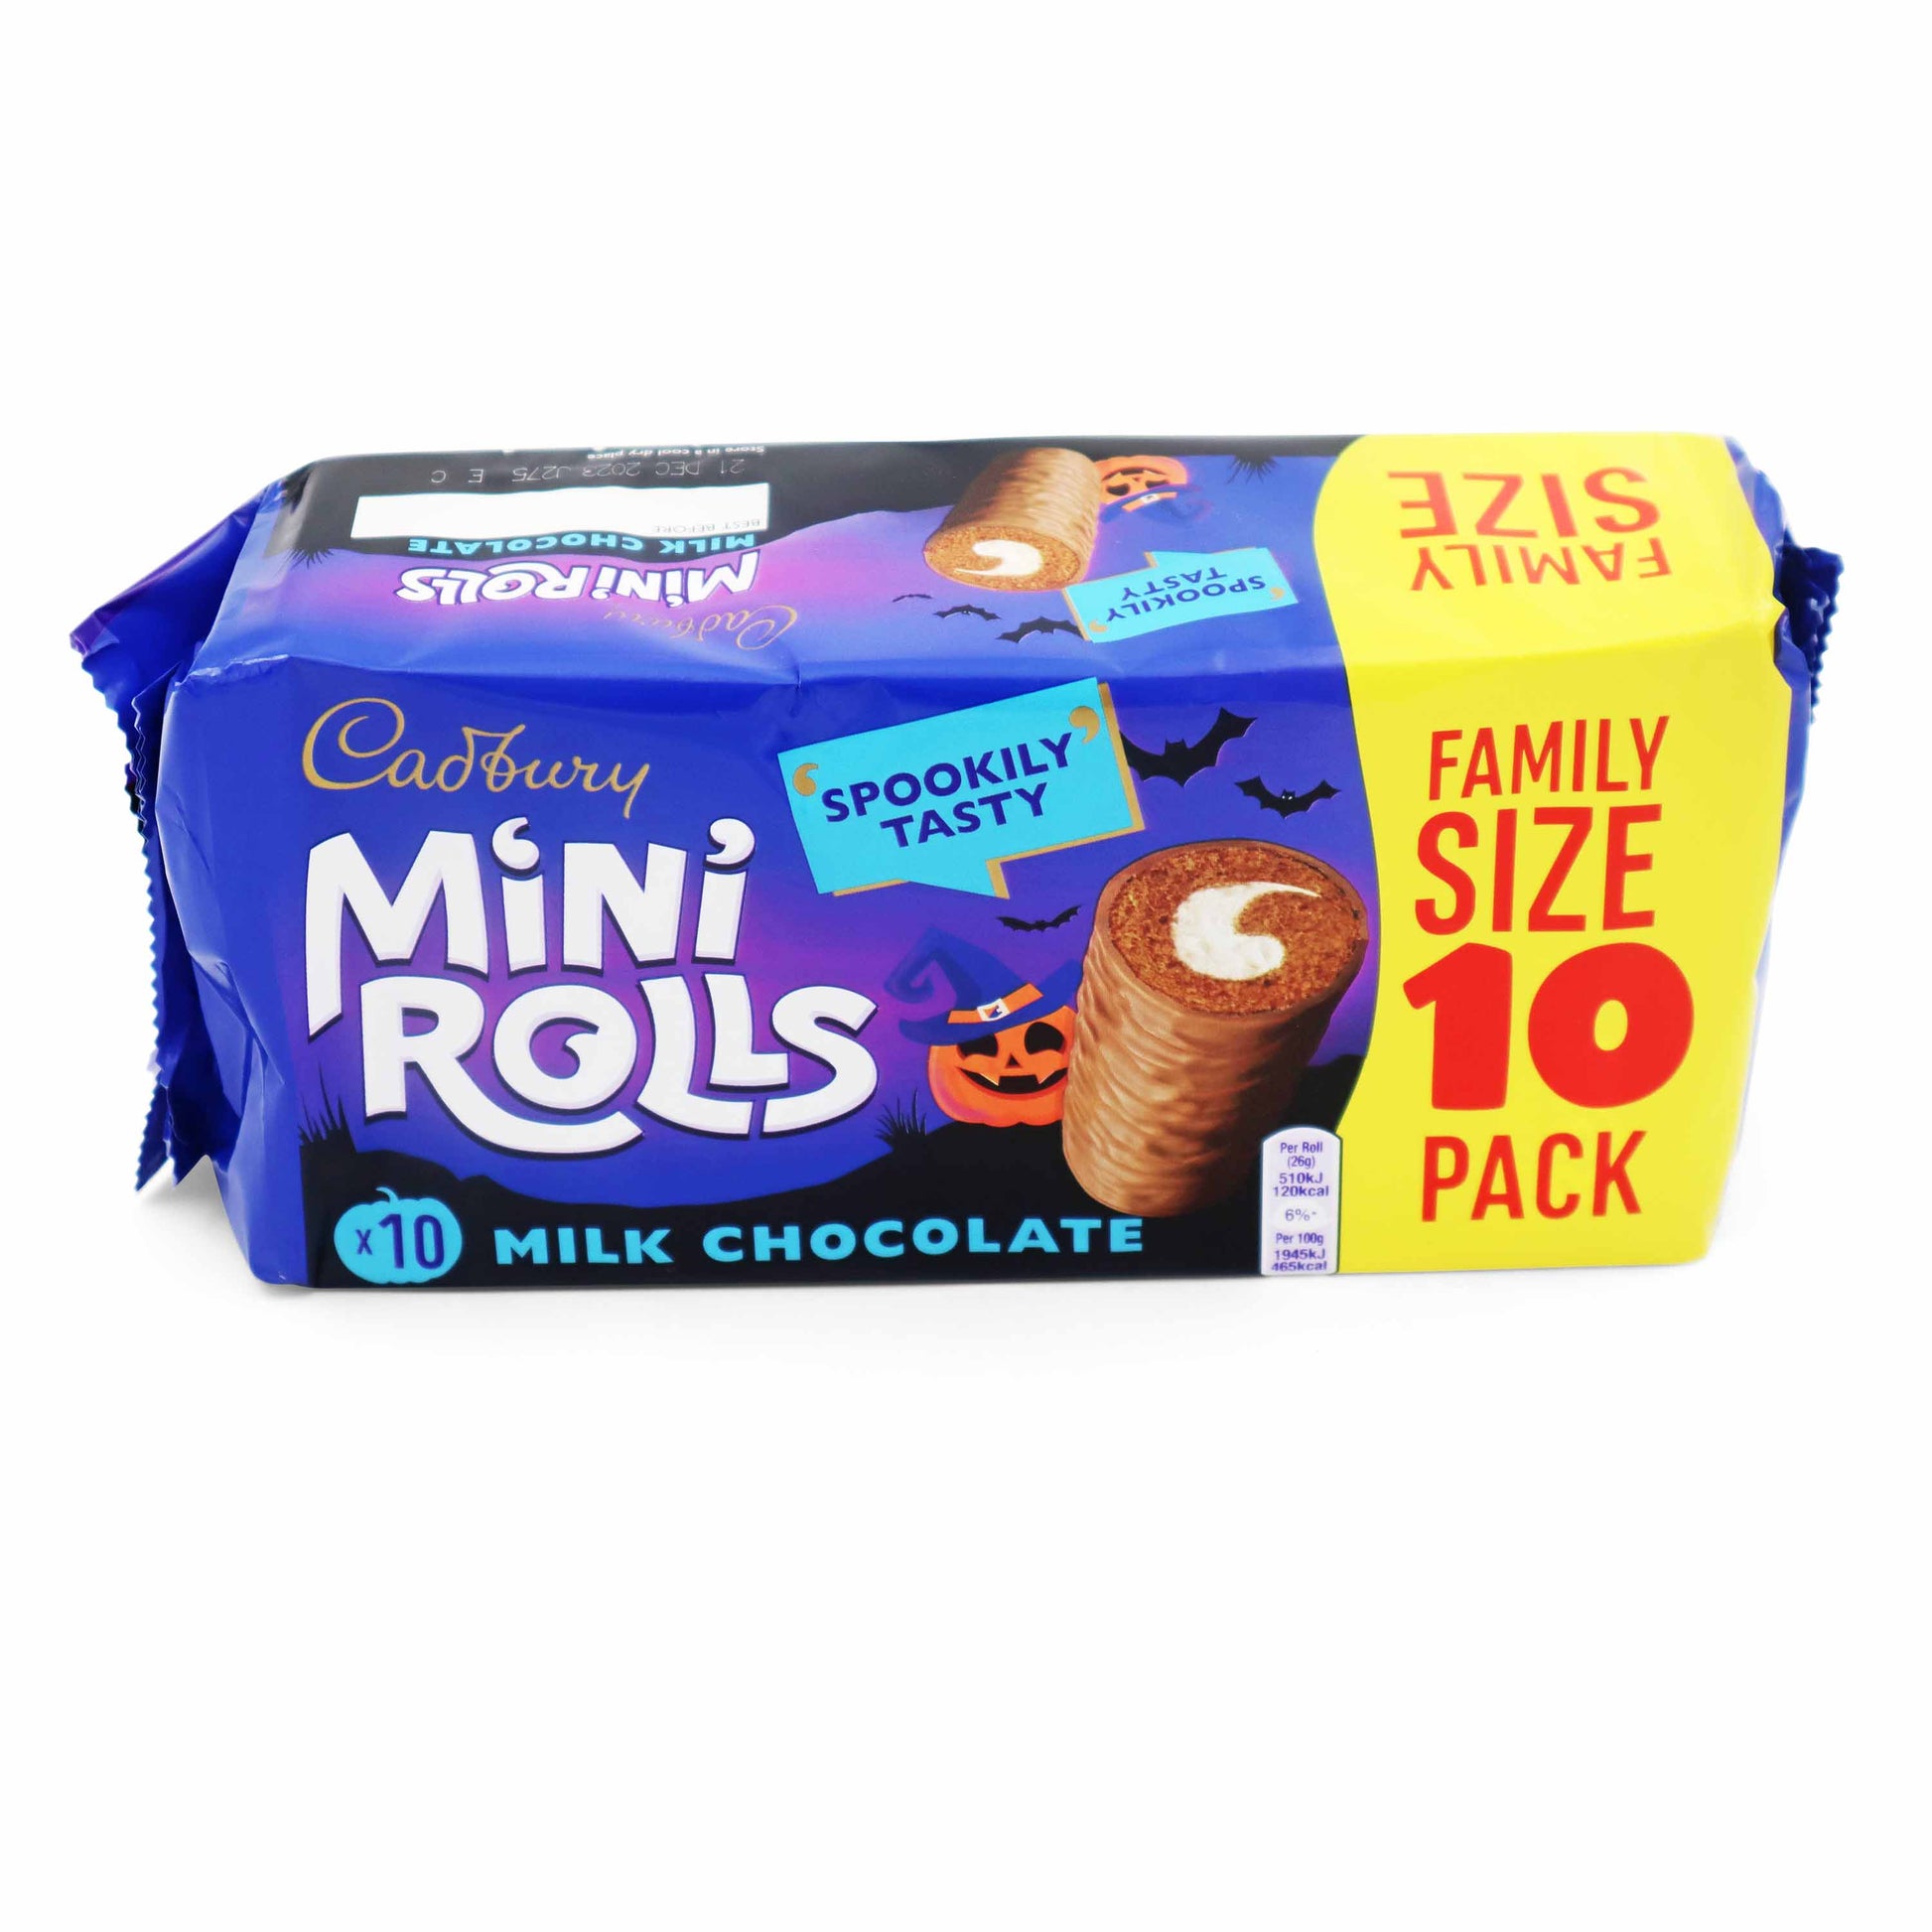 Cadbury Chocolate Mini Rolls Cakes - 10 Pack - British Snacks